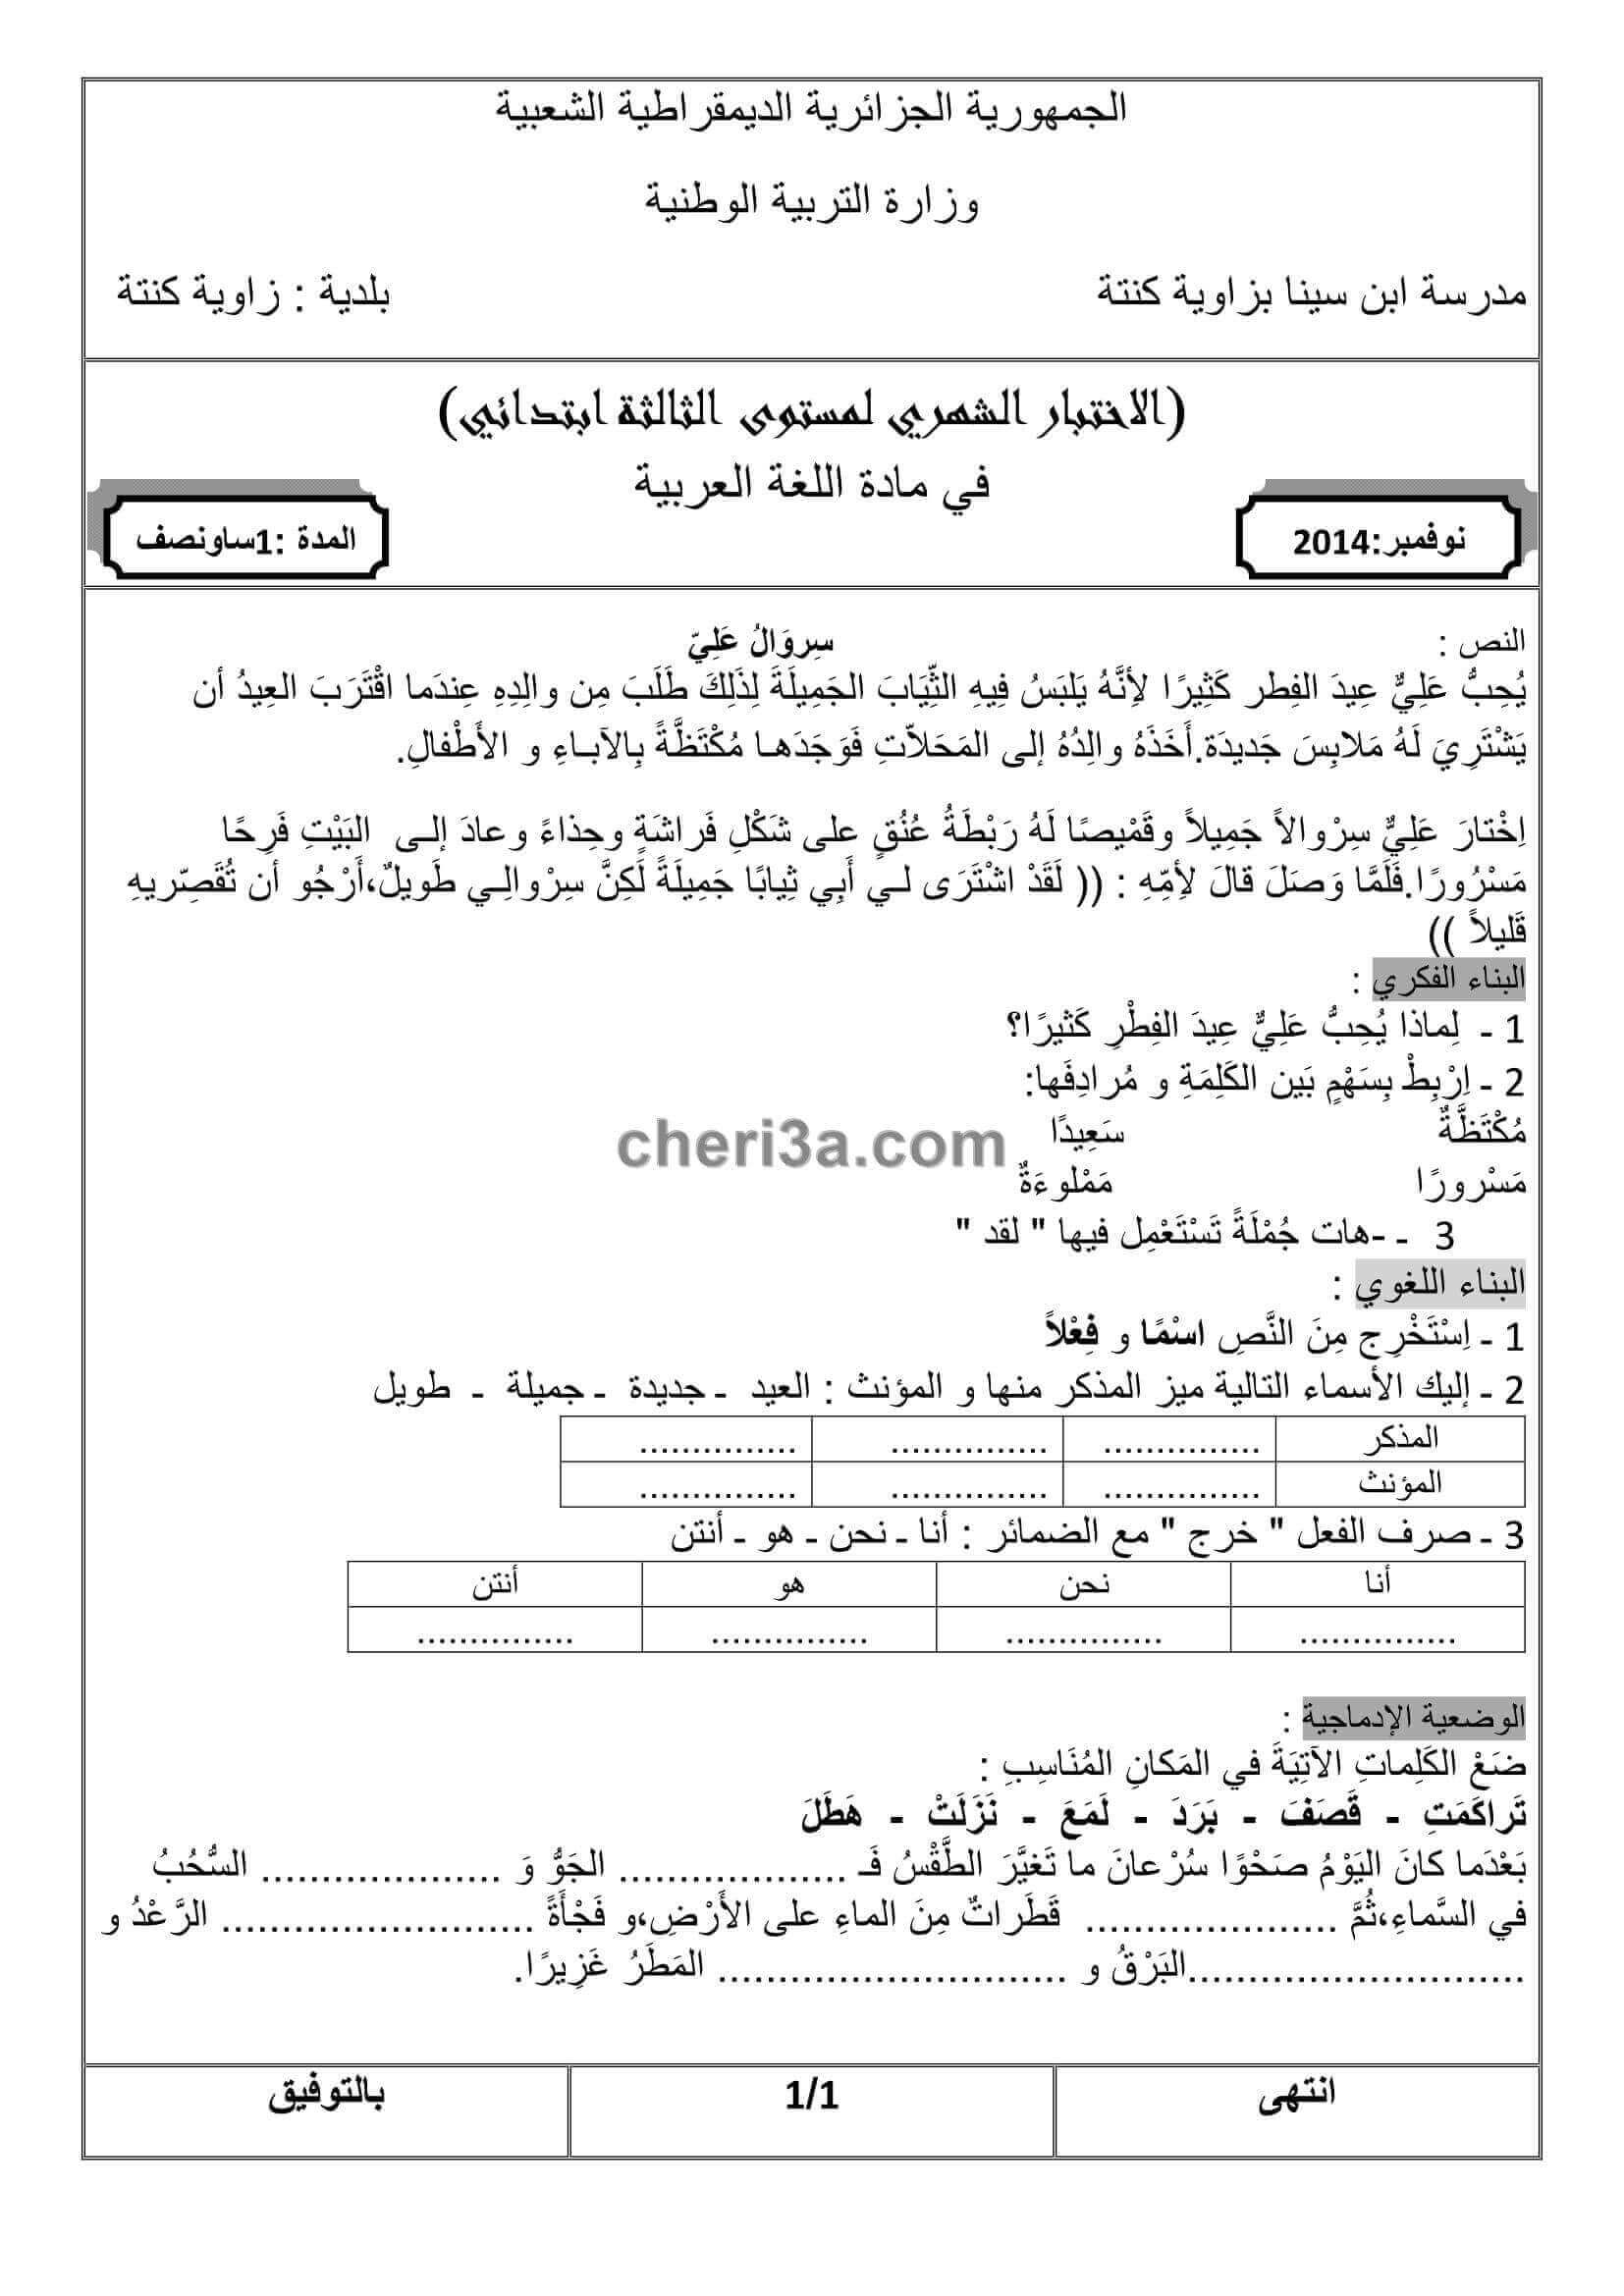 اختبار الفصل الاول للسنة الثالثة ابتدائي في مادة اللغة العربية النموذج 8